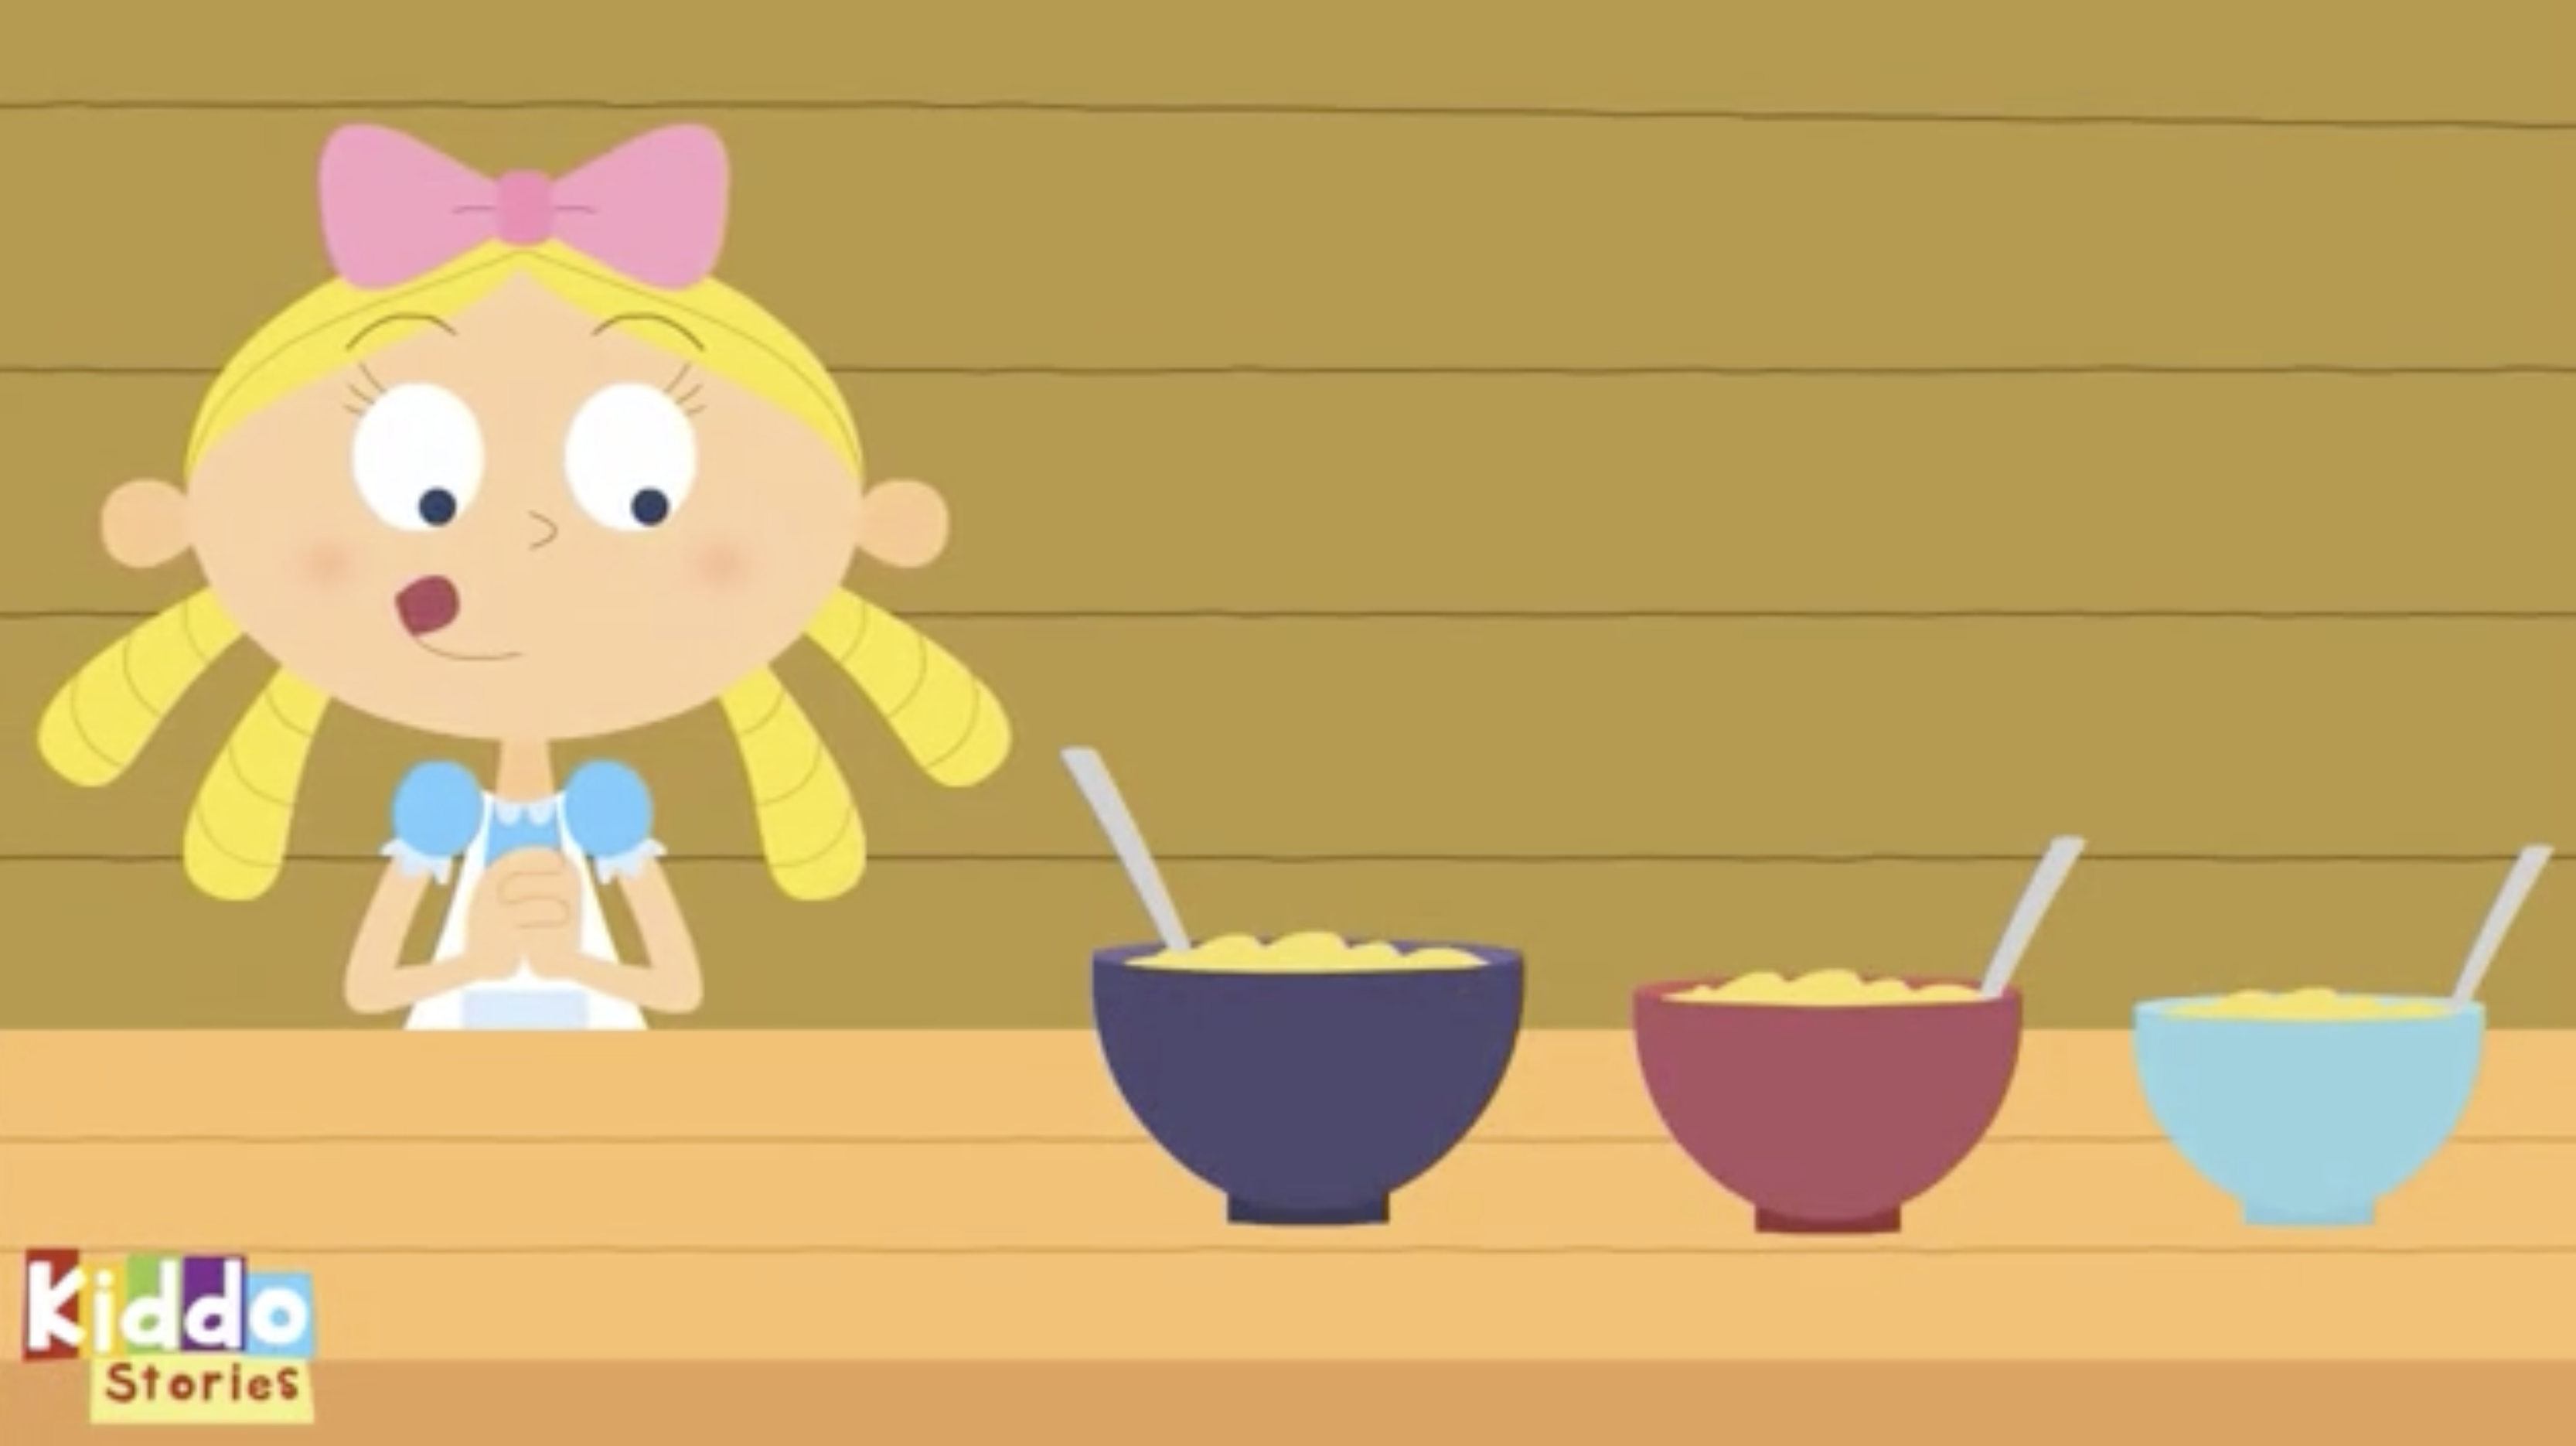 Goldilocks looking at bowls of porridge